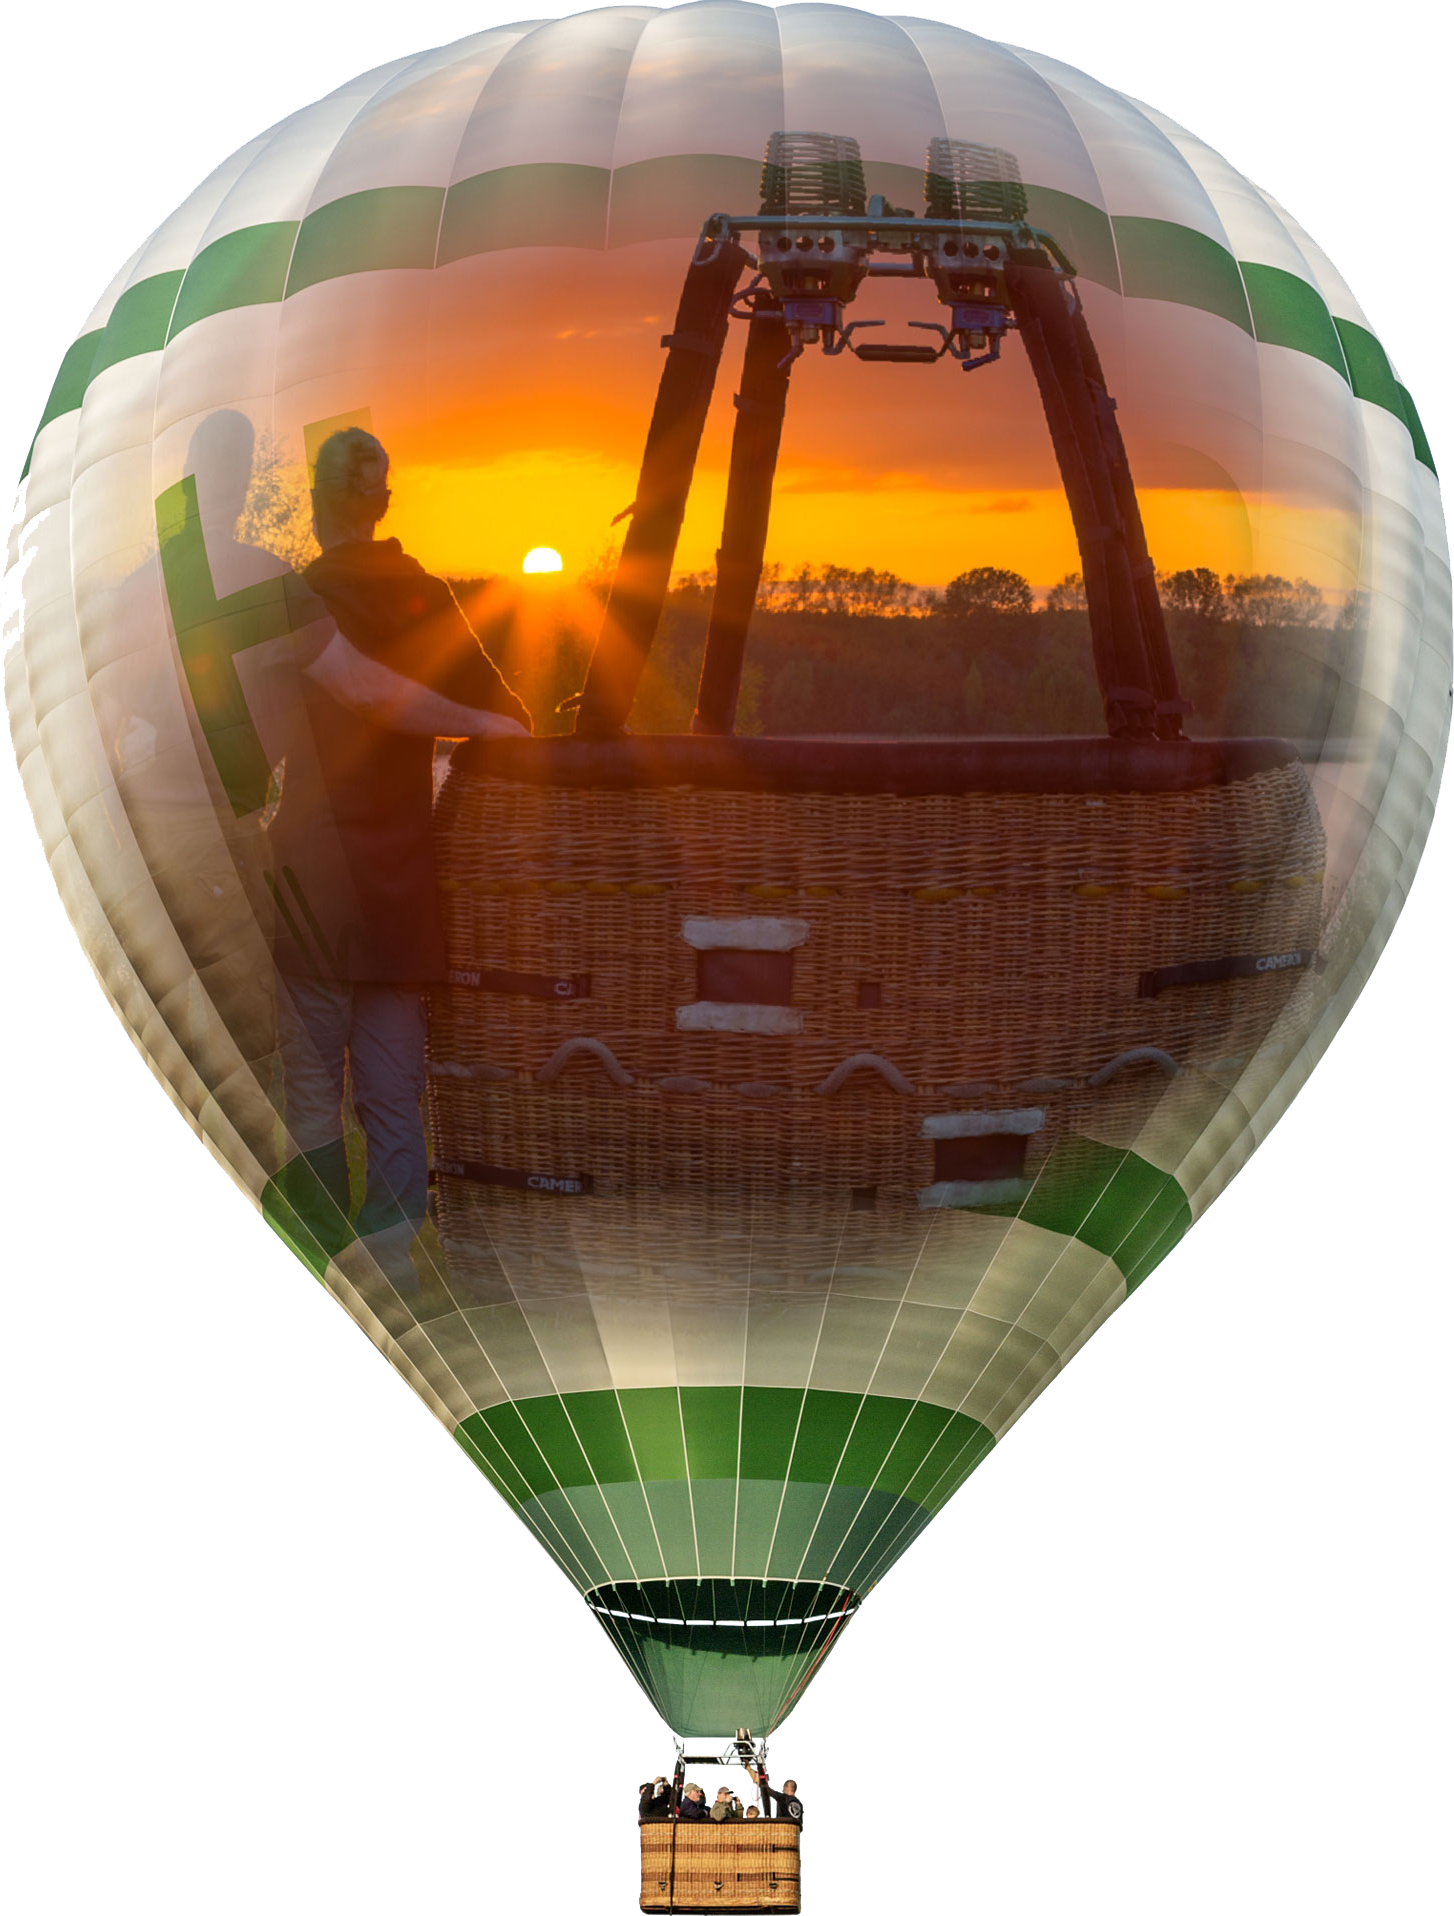 Mit dem Ballon in den Sonnenuntergang von Mecklenburg-Vorpommern fliegen